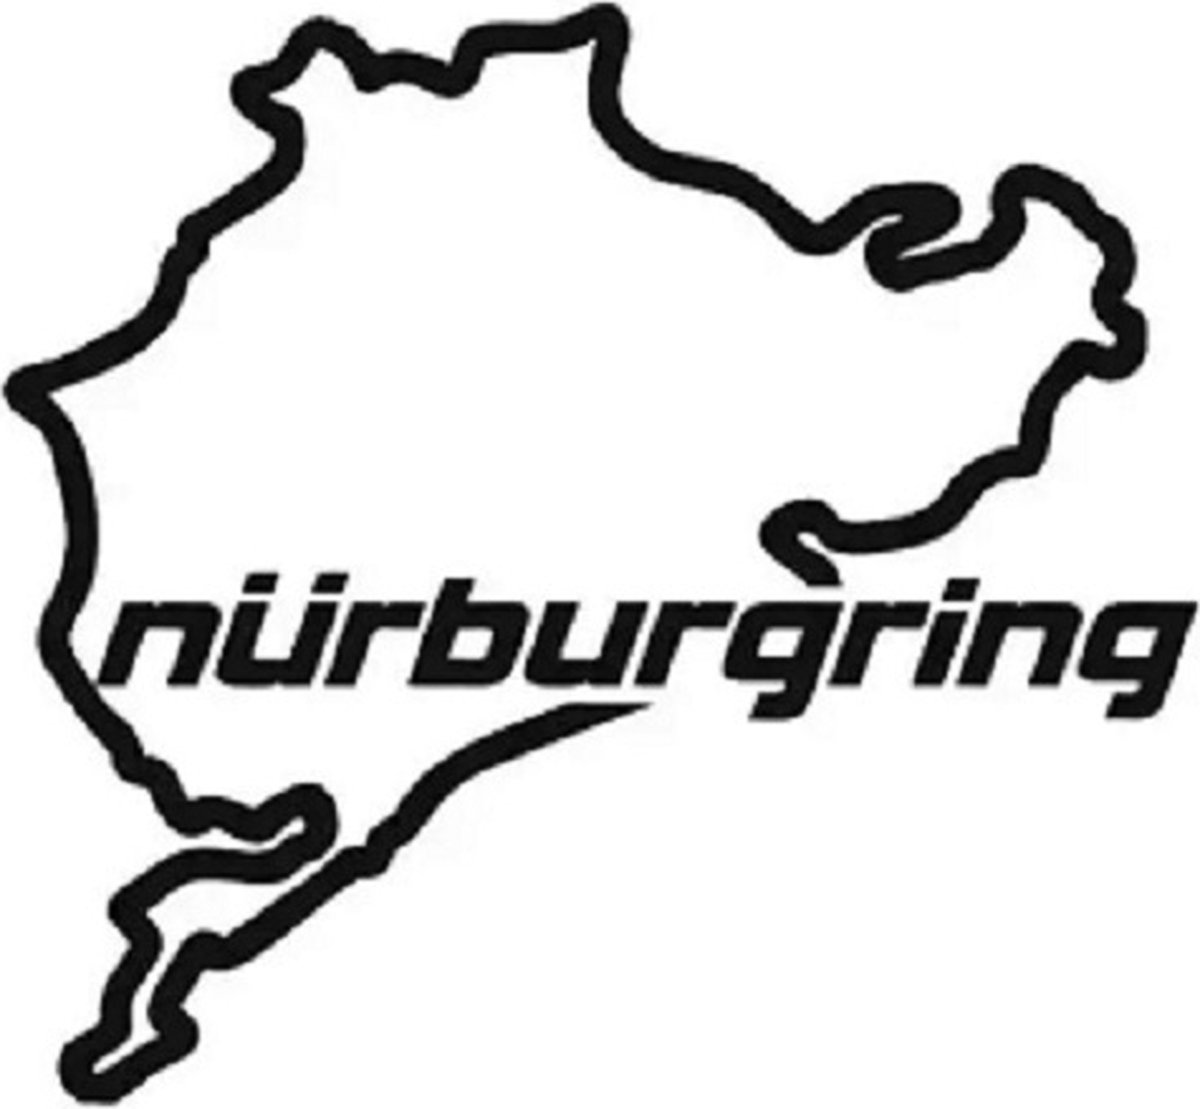 Nurburgring auto stickers - Muurdecoratie - Formule 1 - Laptop sticker - Auto accessories - Sticker volwassenen - 15 x 13 cm - Zwart - 115 - VSE